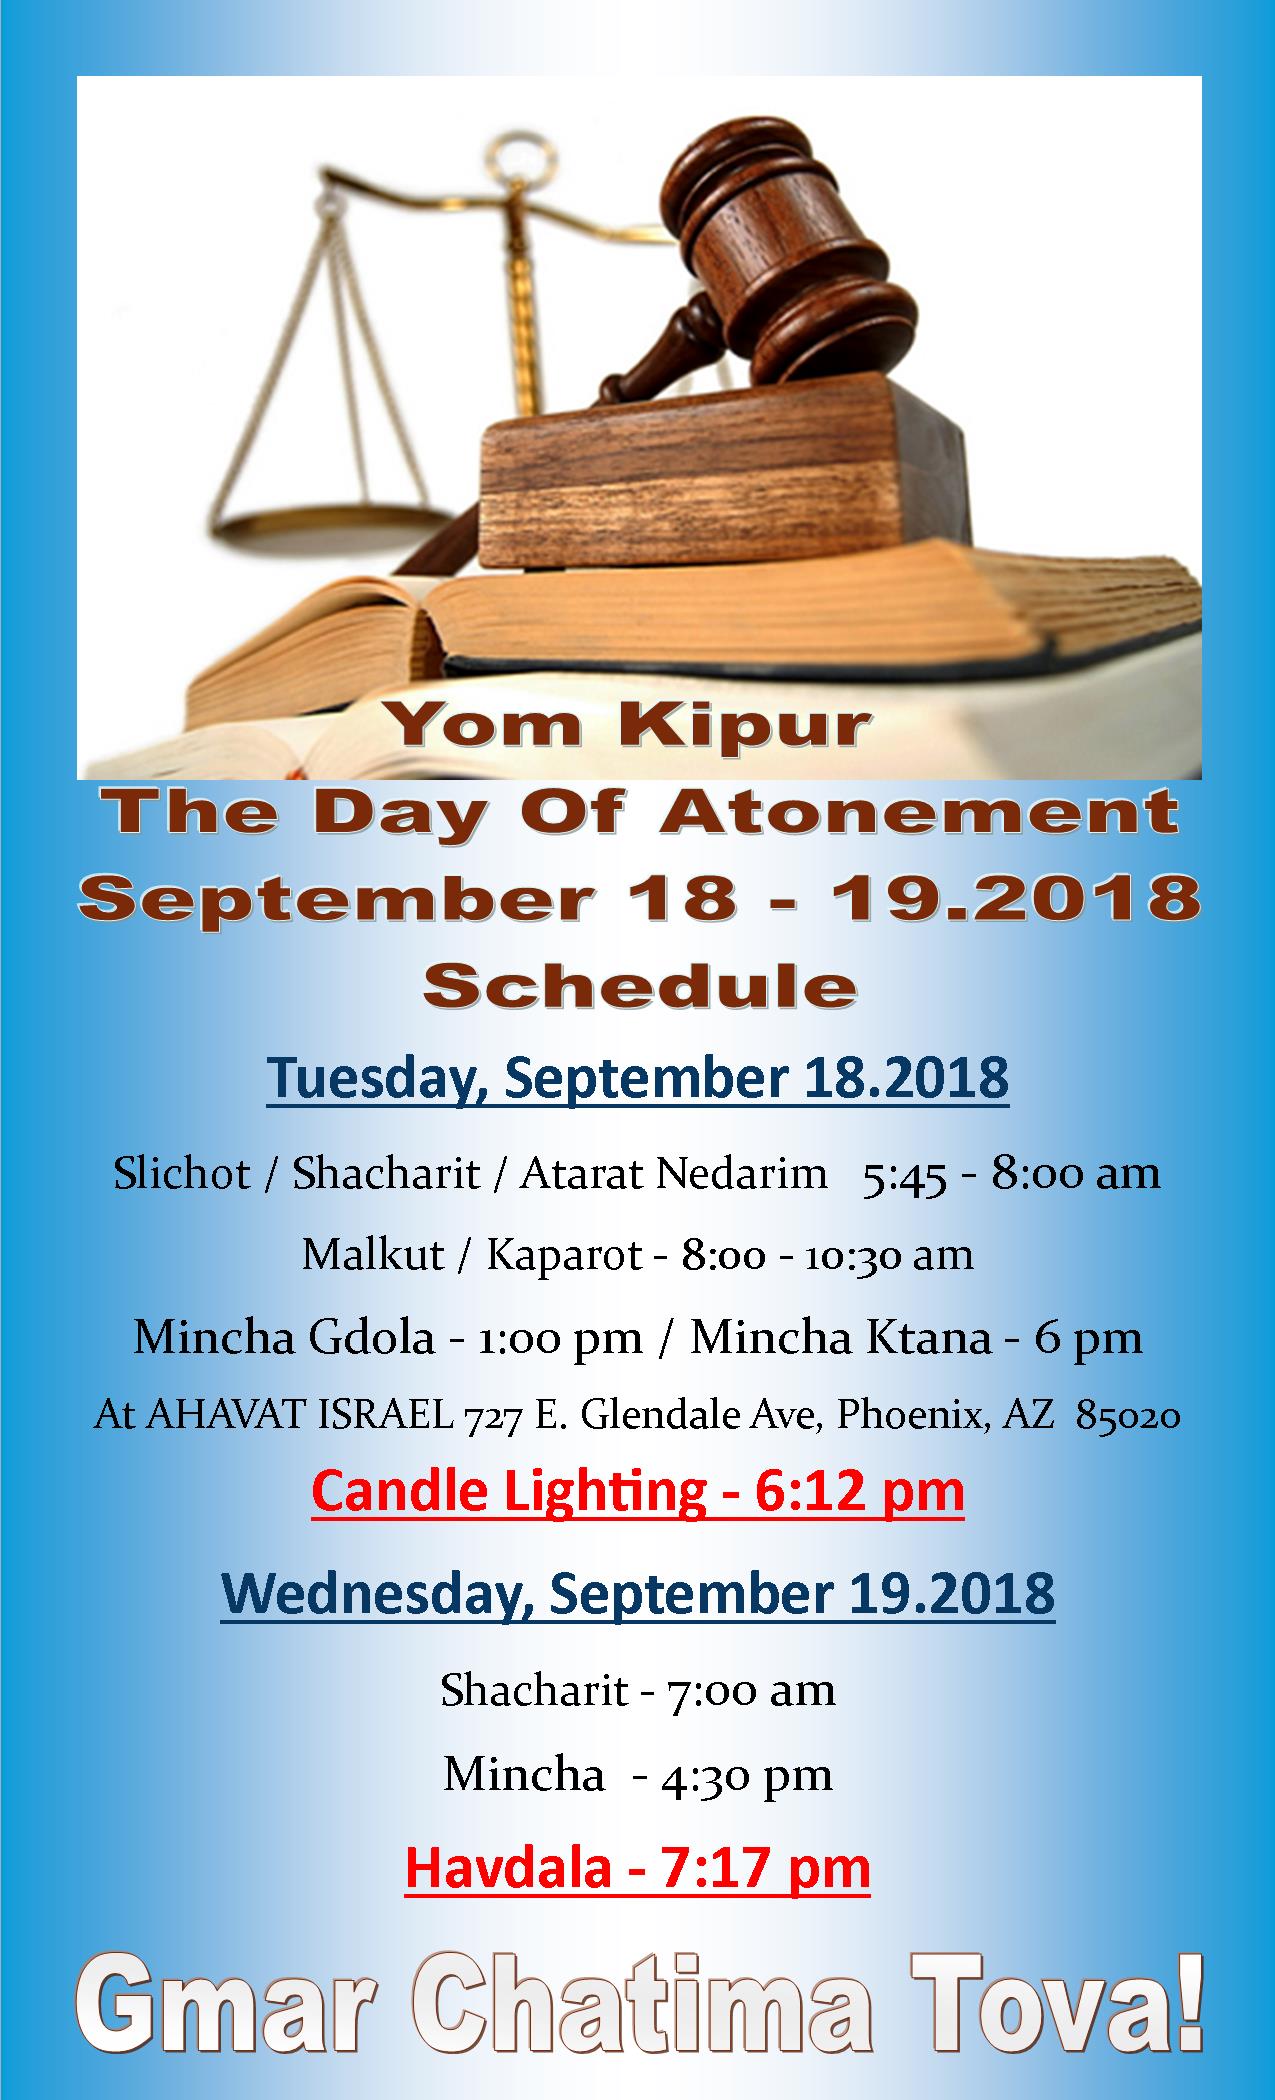 yom kipur schedule 2018